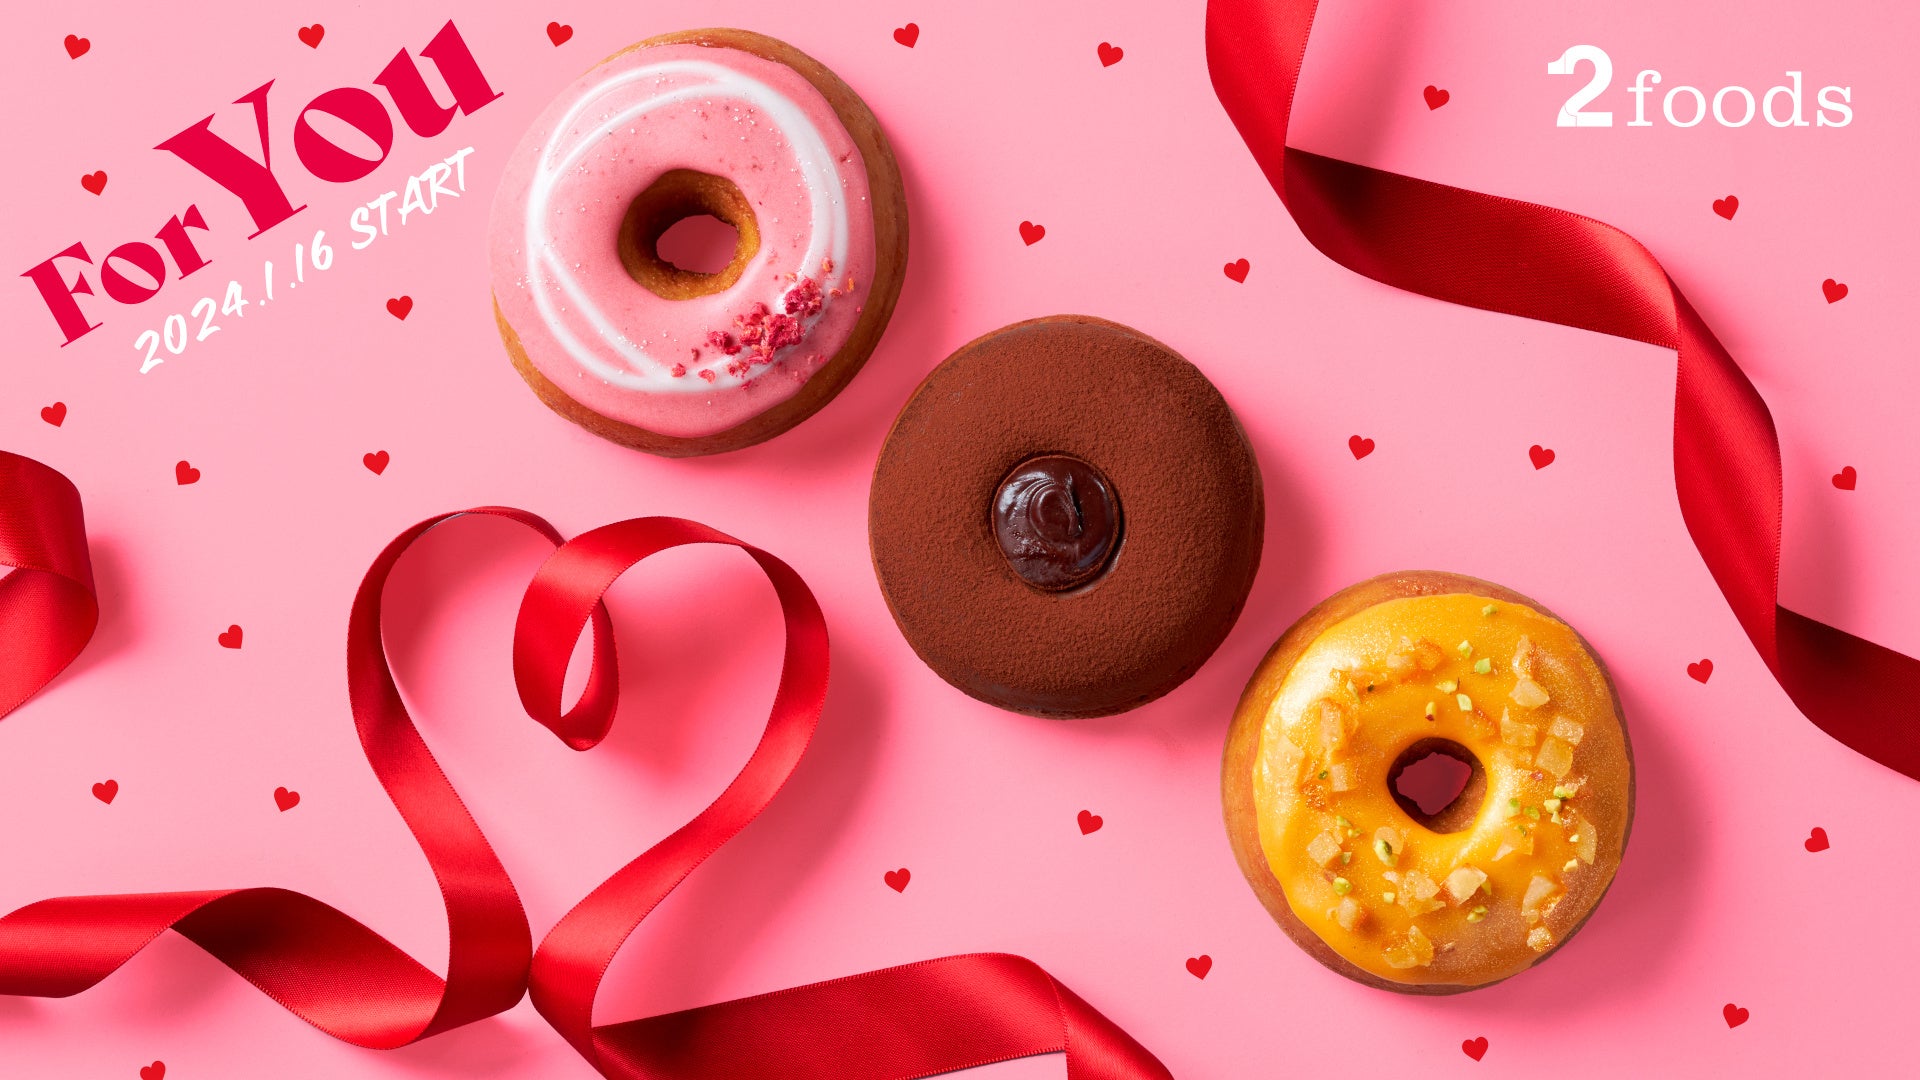 プラントベースフードブランド「2foods」から、縁を繋いでいく「For you」をテーマに、チョコレートや多種多様なフルーツを使用したバレンタインにぴったりのドーナツコレクション1月16日より発売